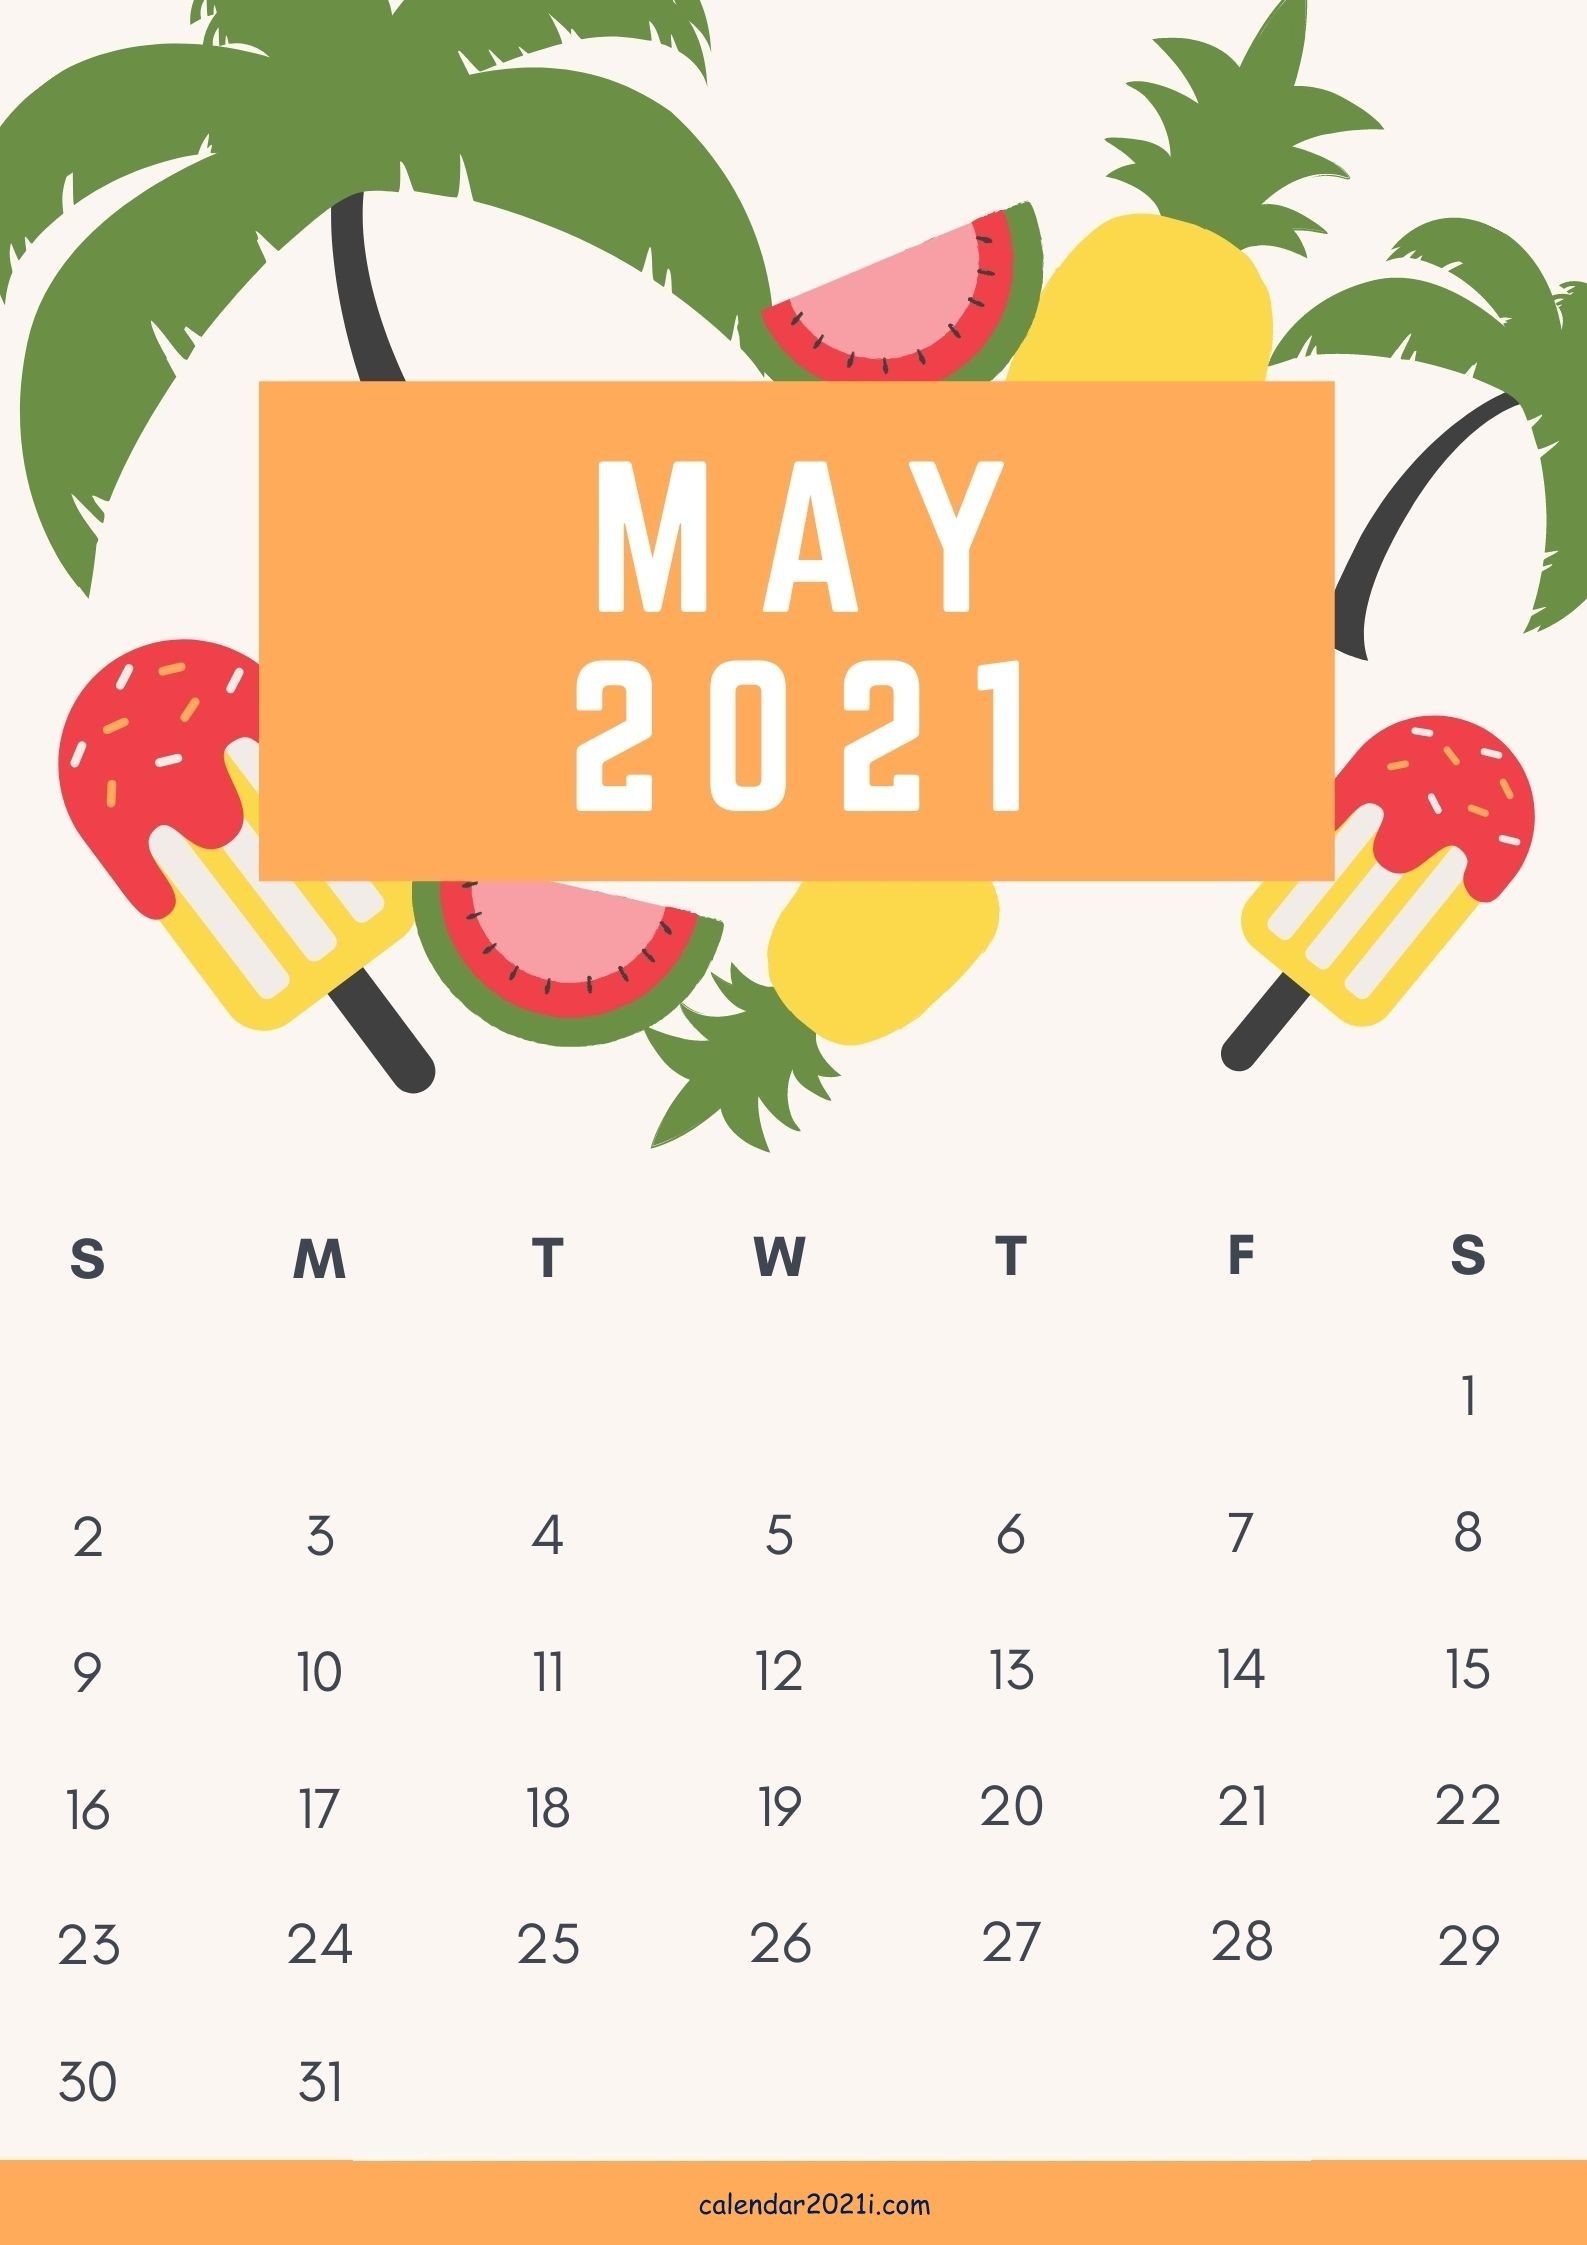 Cute May 2021 Calendar design free download. Calendar design , Calendar design, Free printable calendar